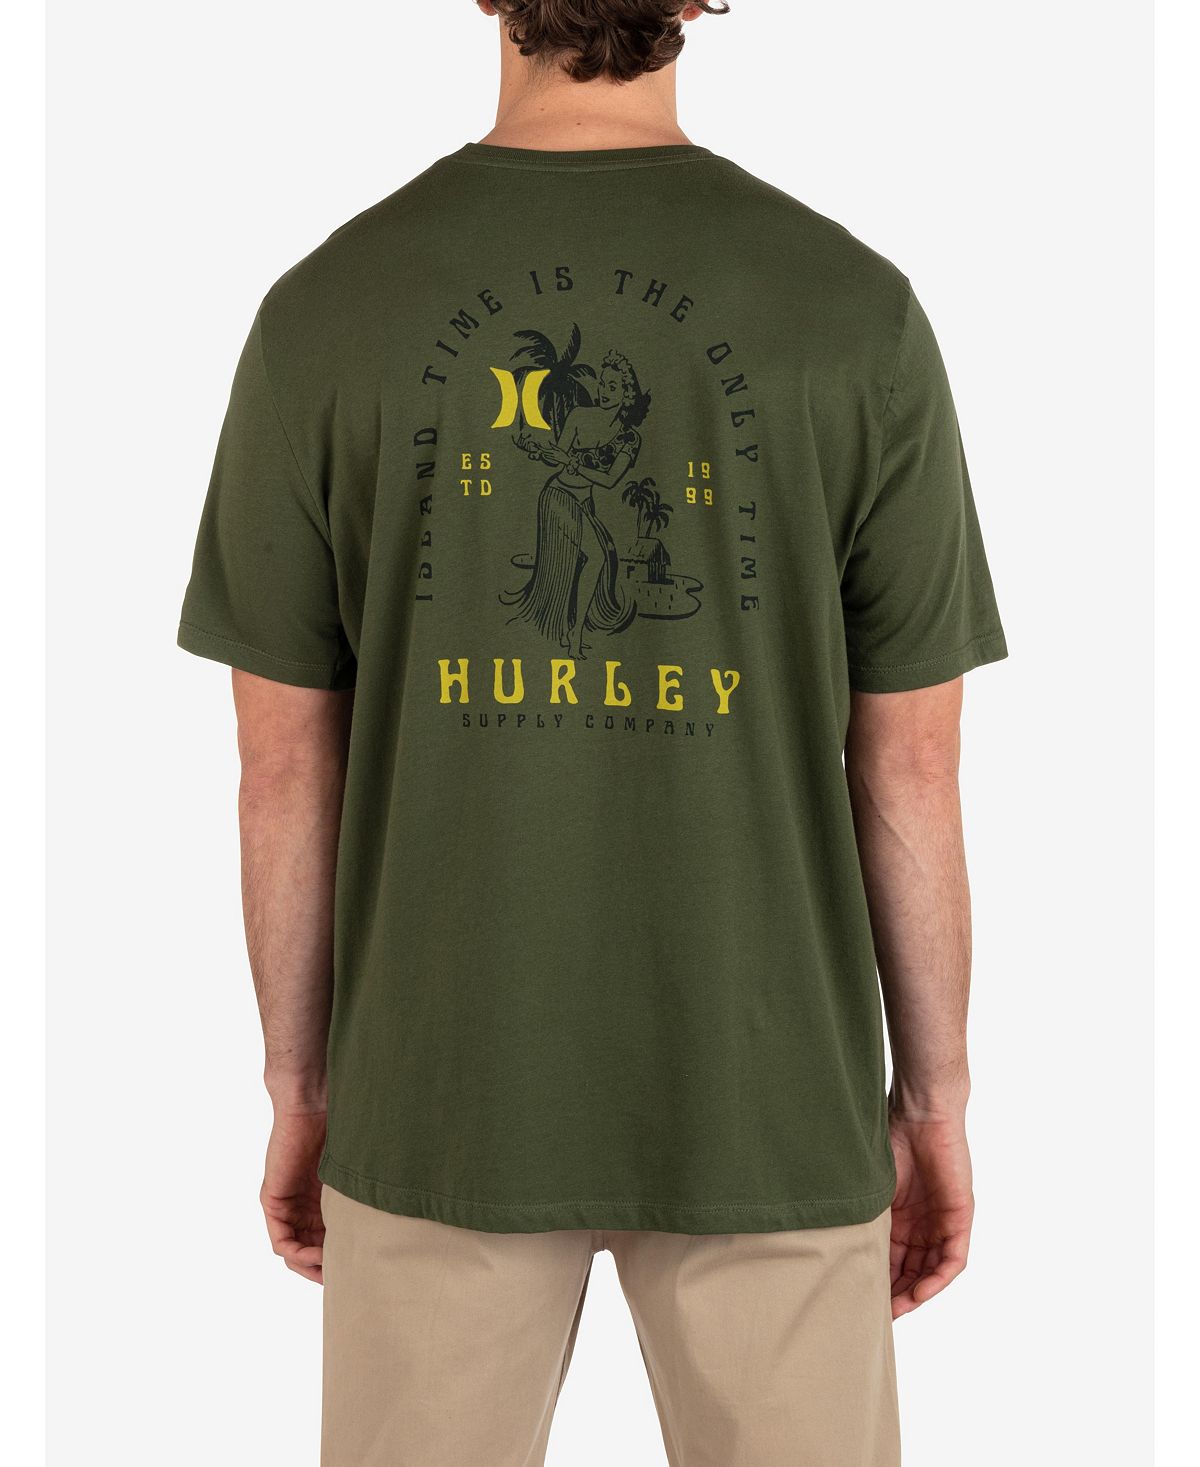 Мужская футболка Island Time с коротким рукавом на каждый день Hurley мужская повседневная футболка с коротким рукавом для укулеле hurley тан бежевый